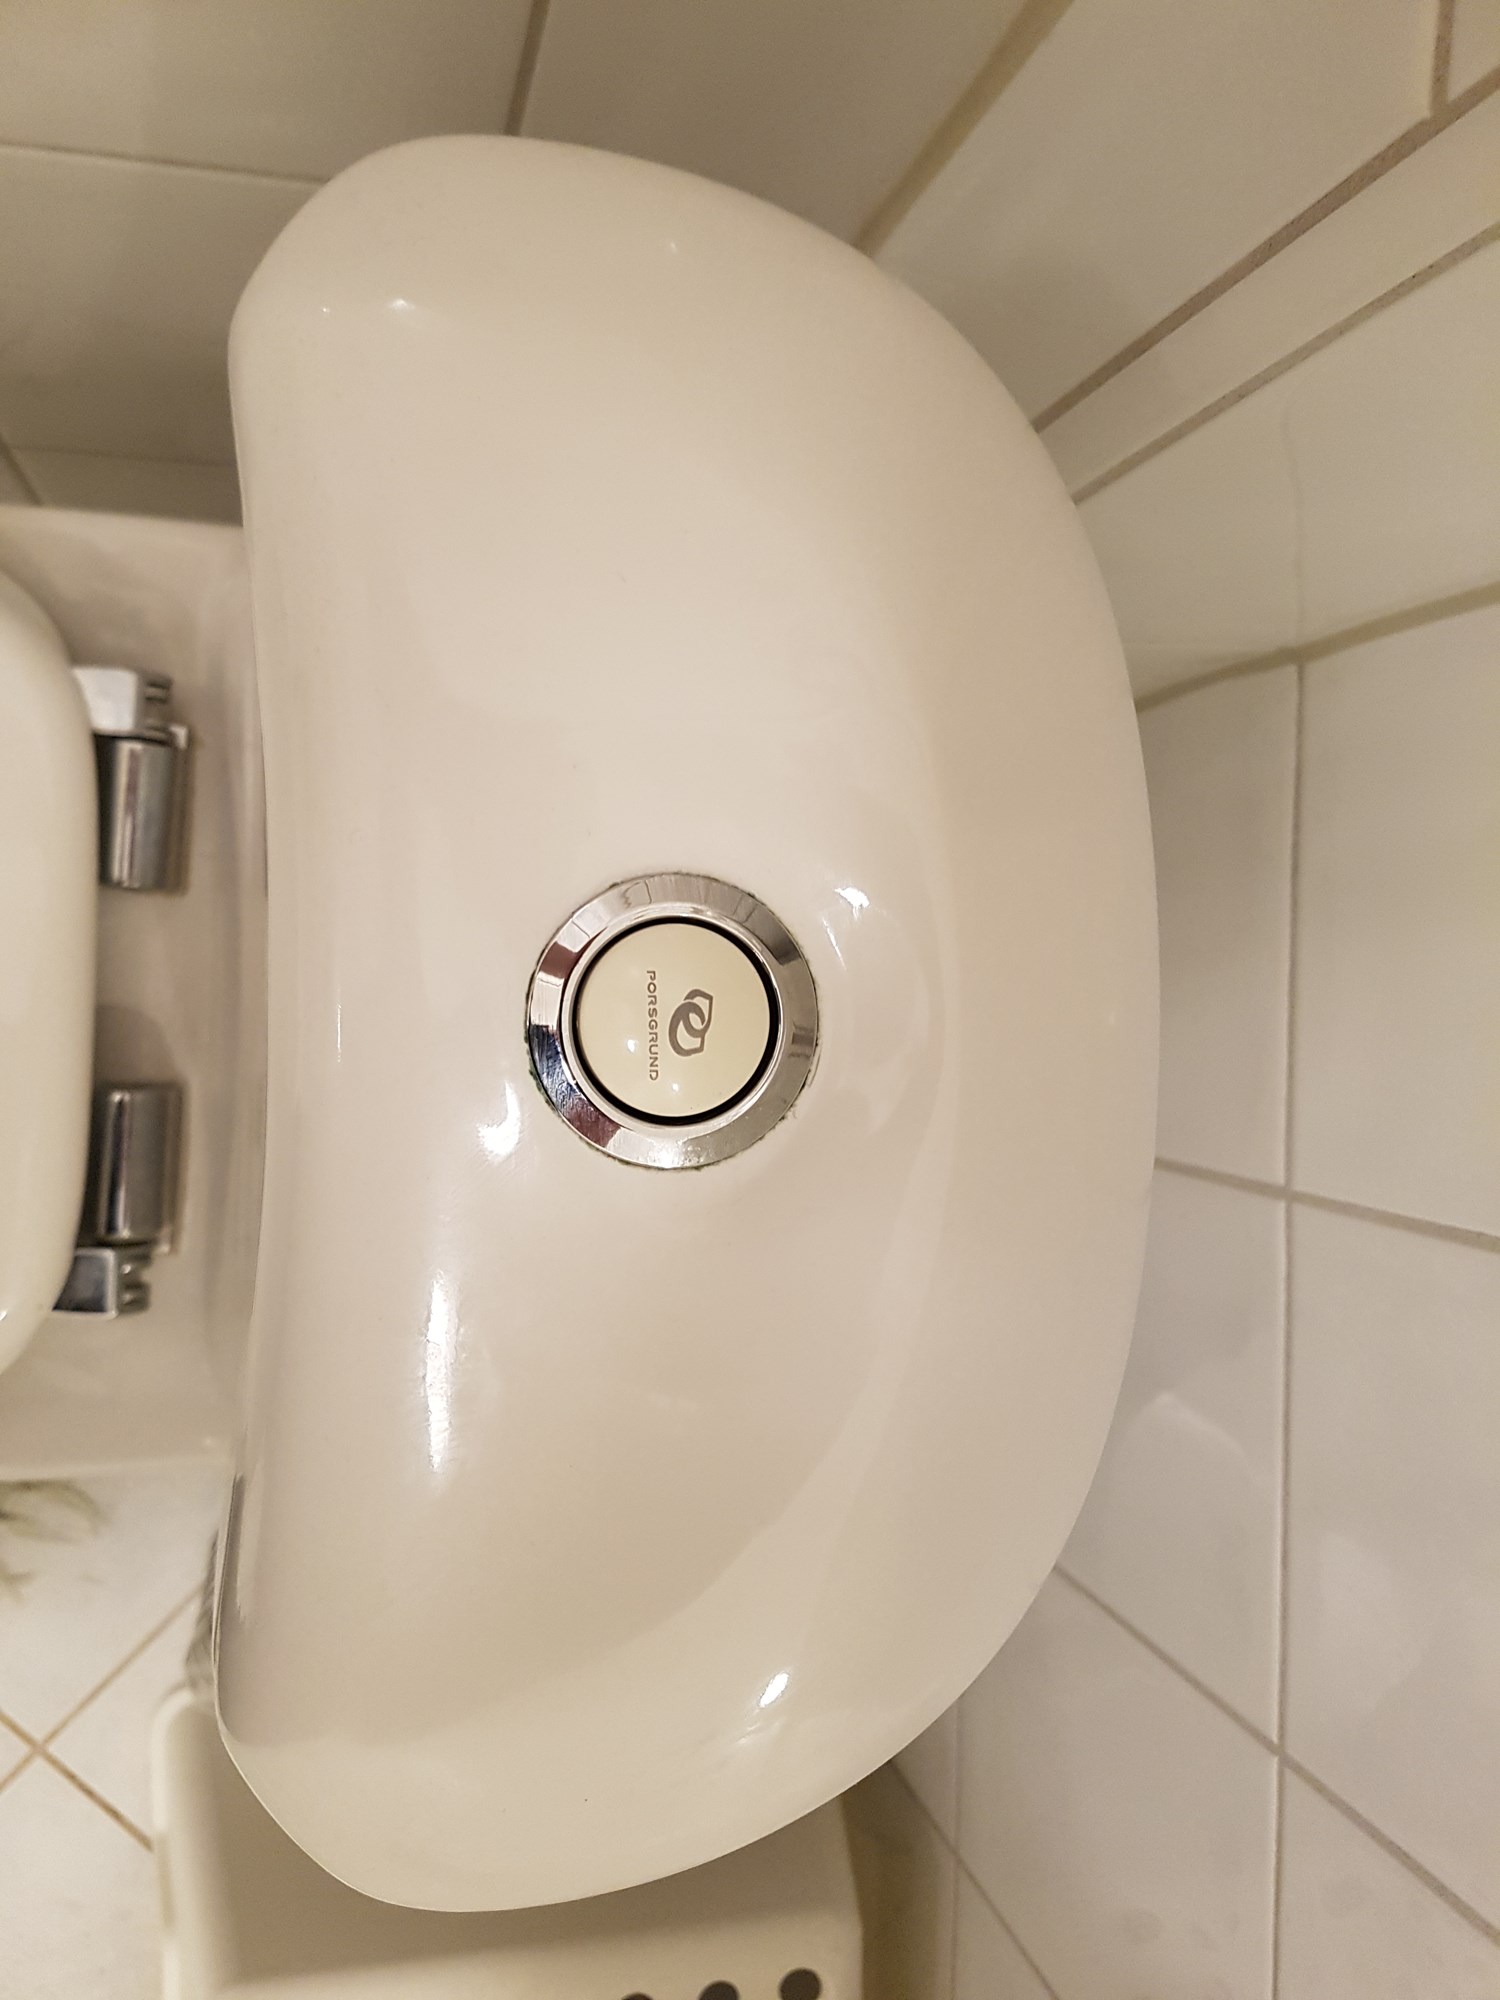 Identifisere Porsgrund toalett - Porsgrund 2.jpg - 48x98